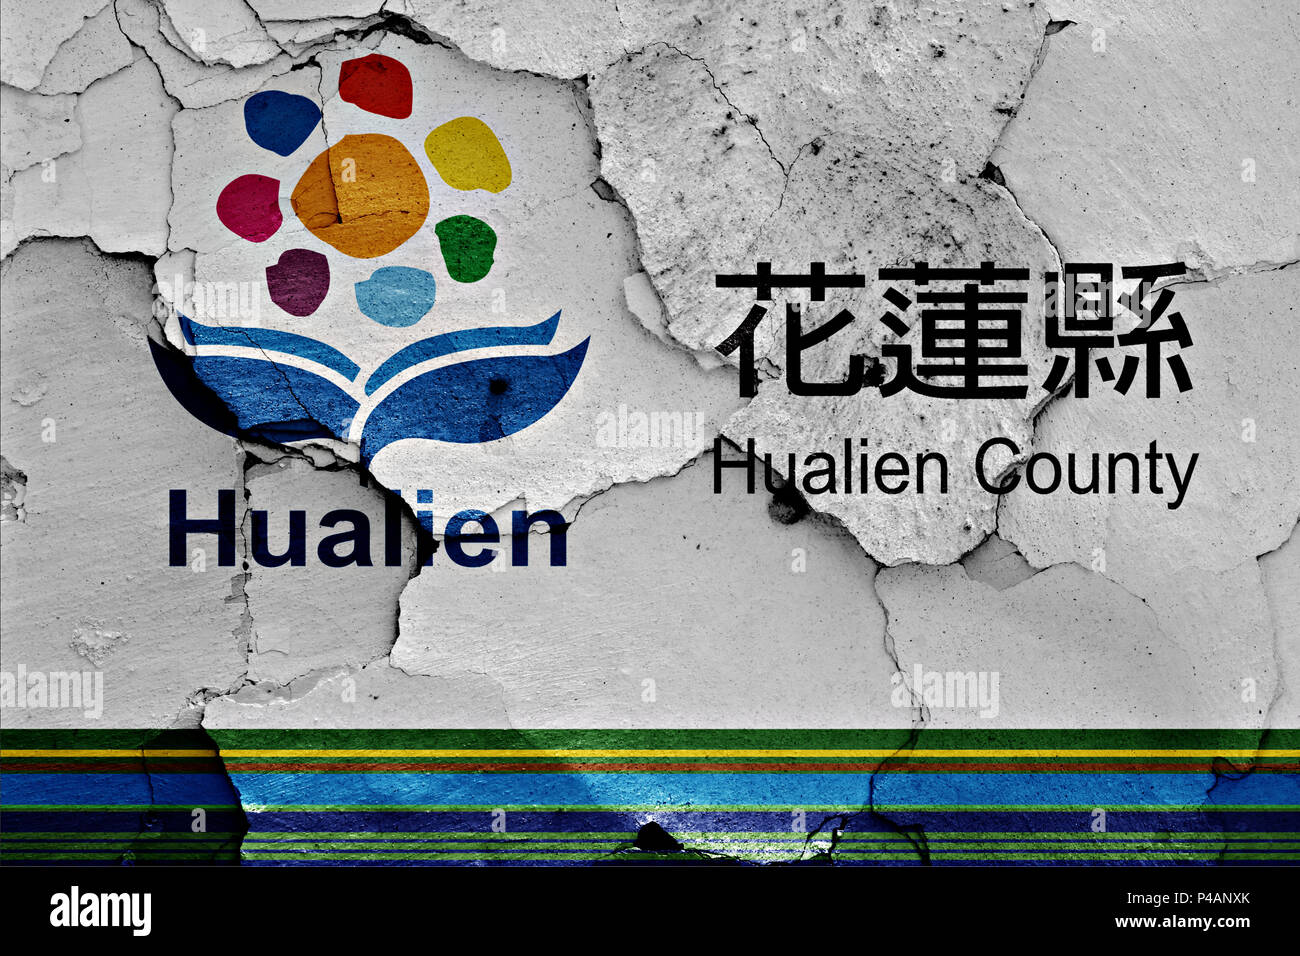 Pavillon de Hualien county, Taiwan Banque D'Images